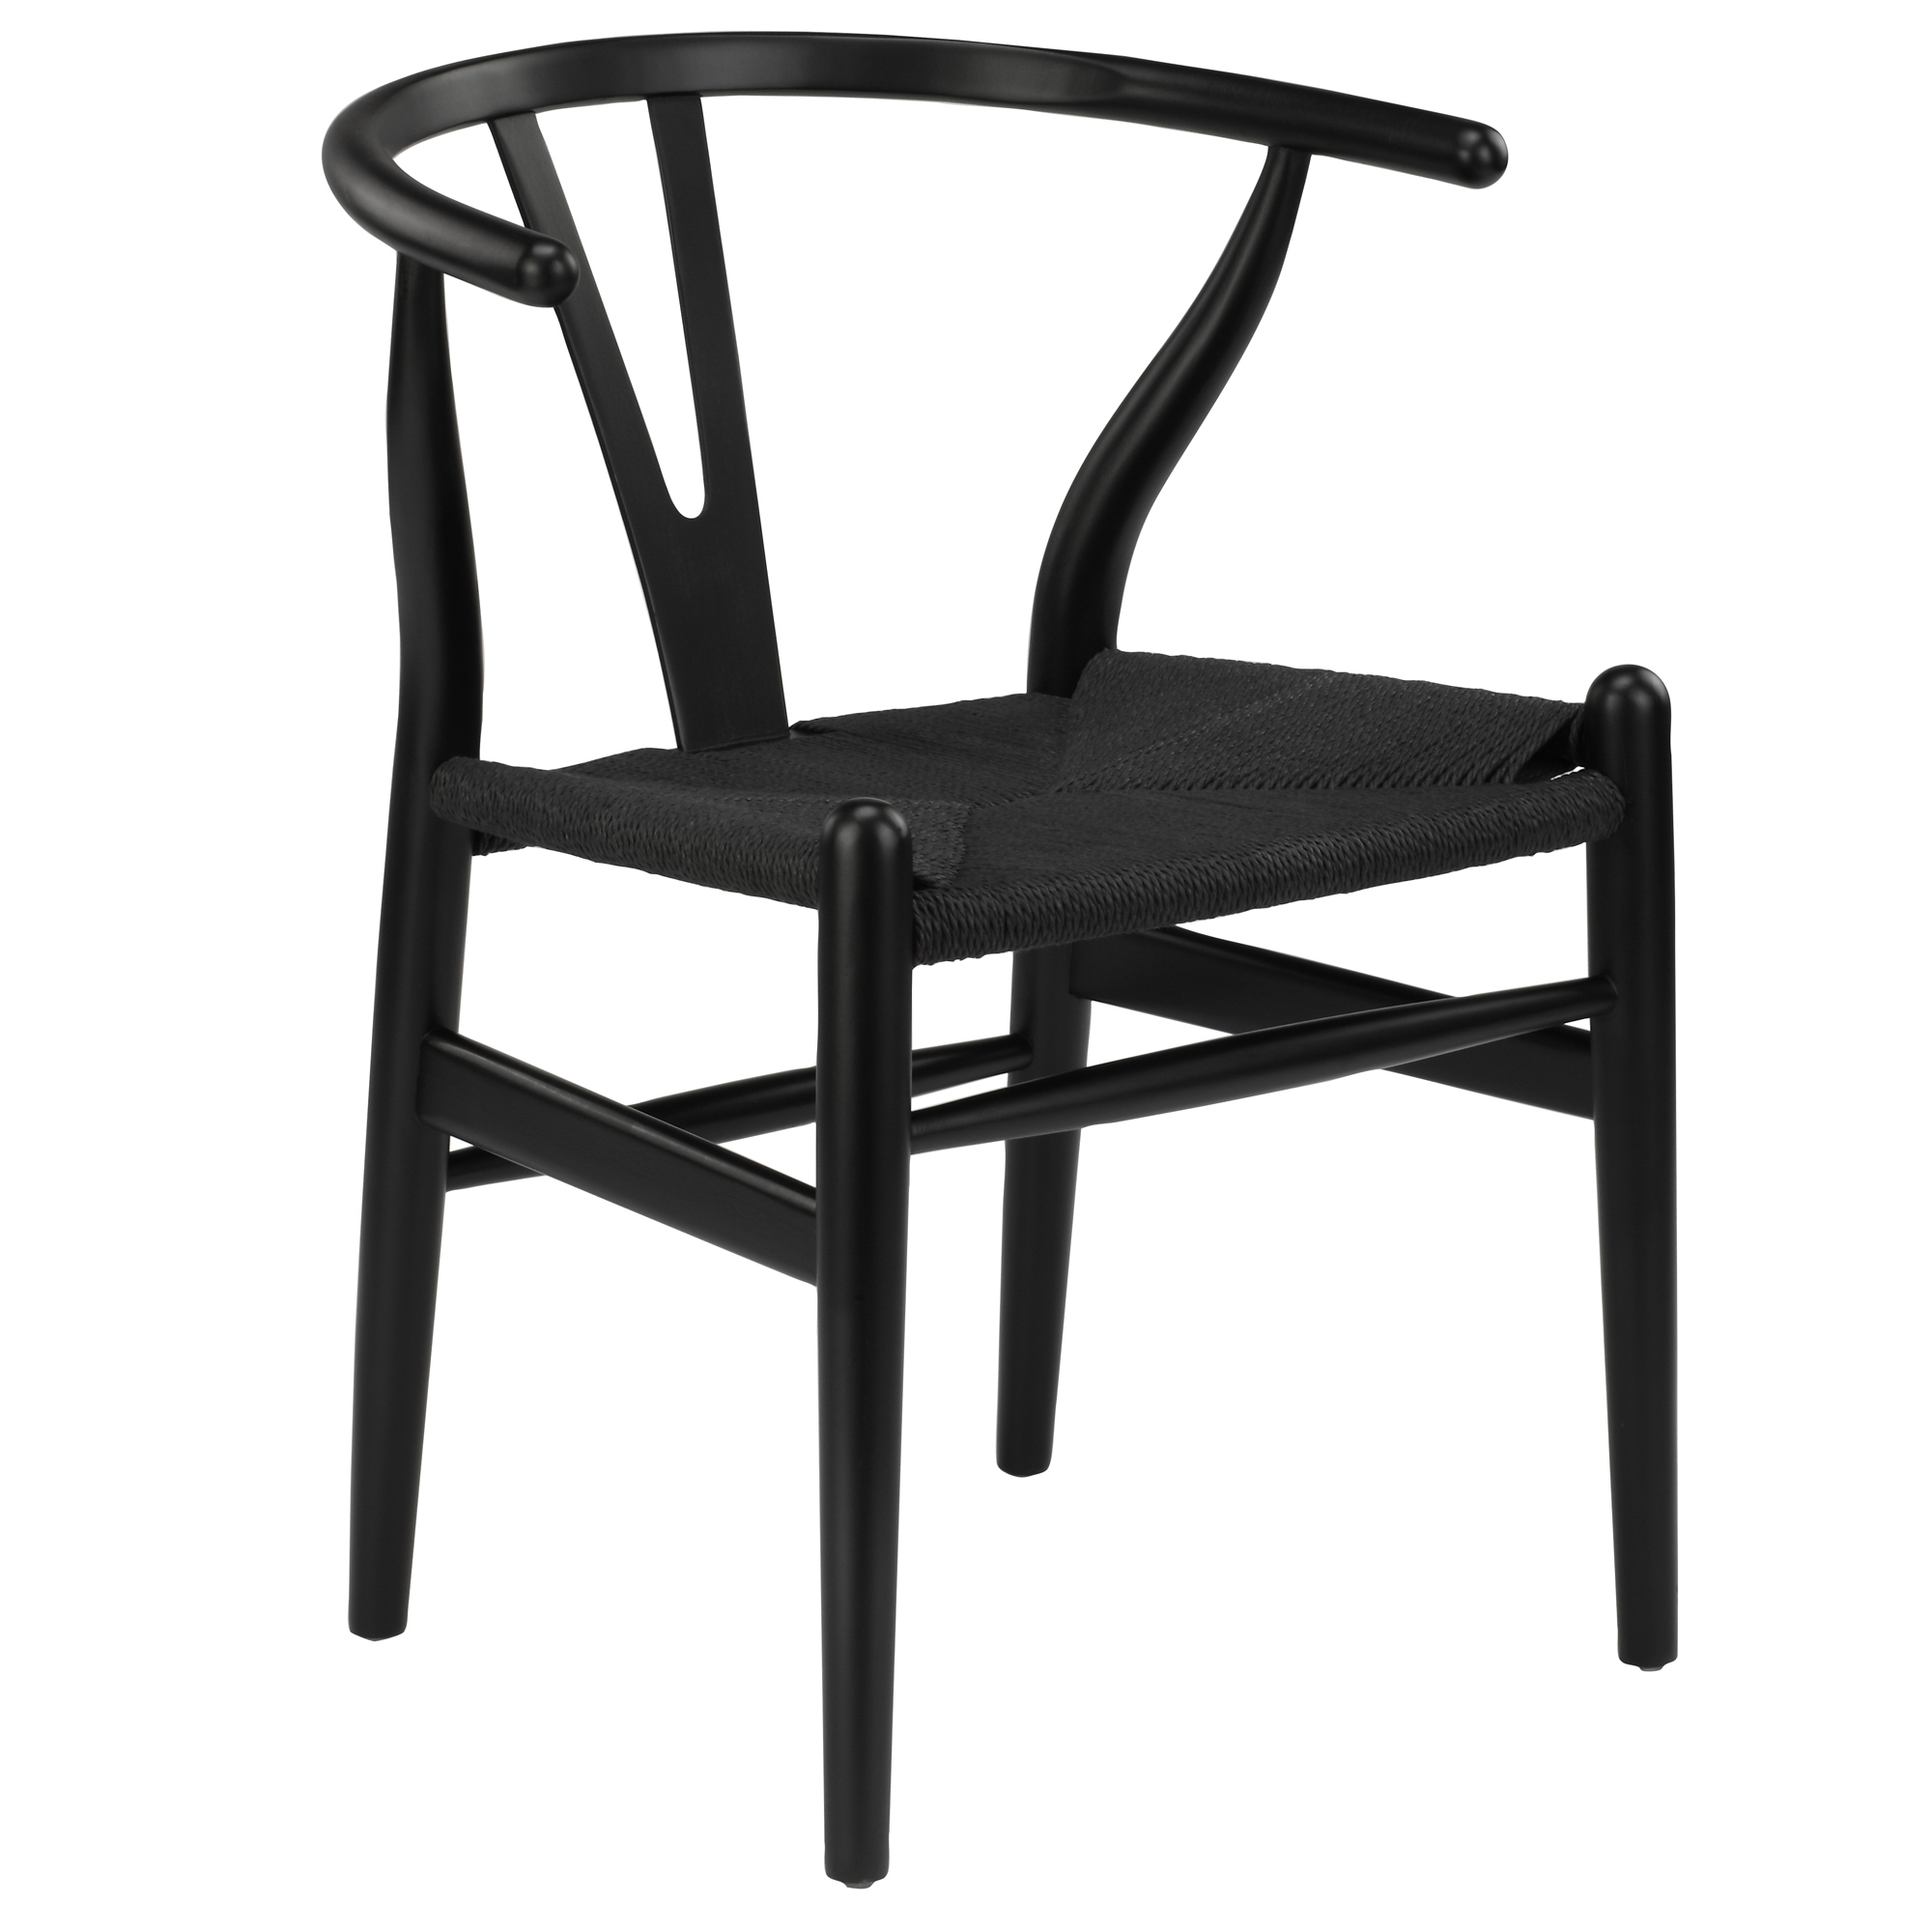 NEW Set of 2 Black Hans Wegner Replica Wishbone Chairs | eBay